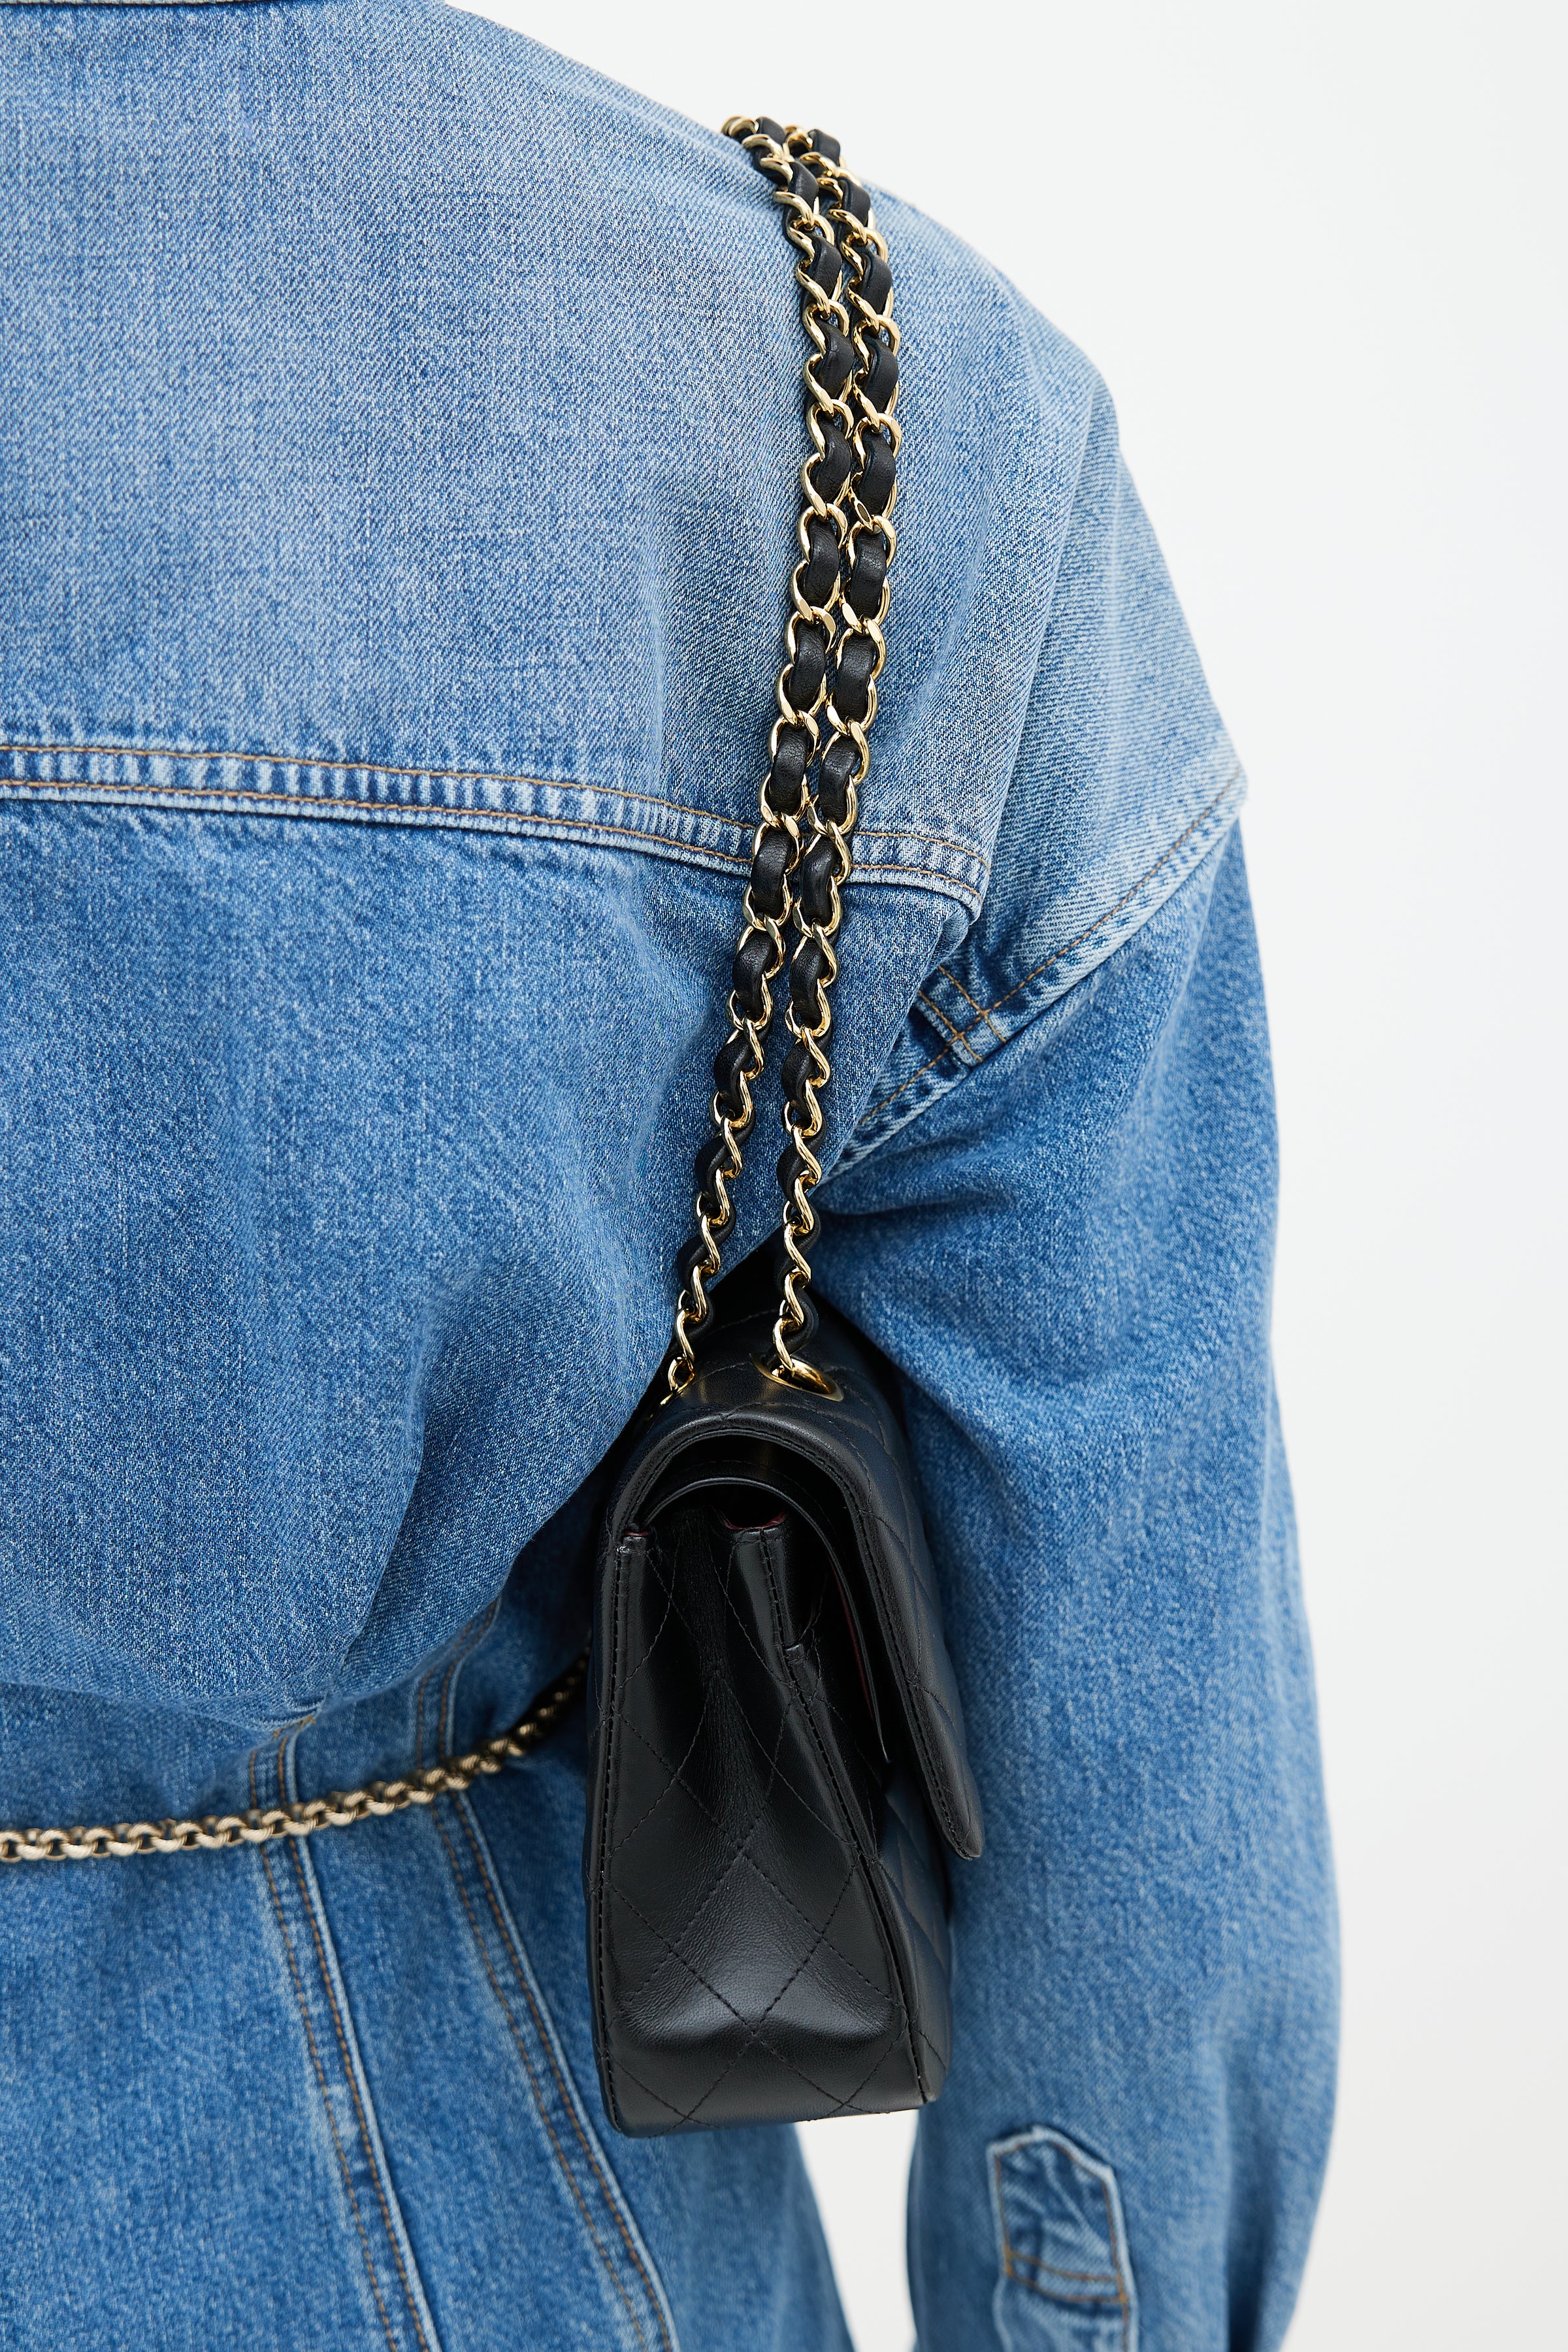 Chanel // Beige & Black Gabrielle Large Shoulder Bag – VSP Consignment